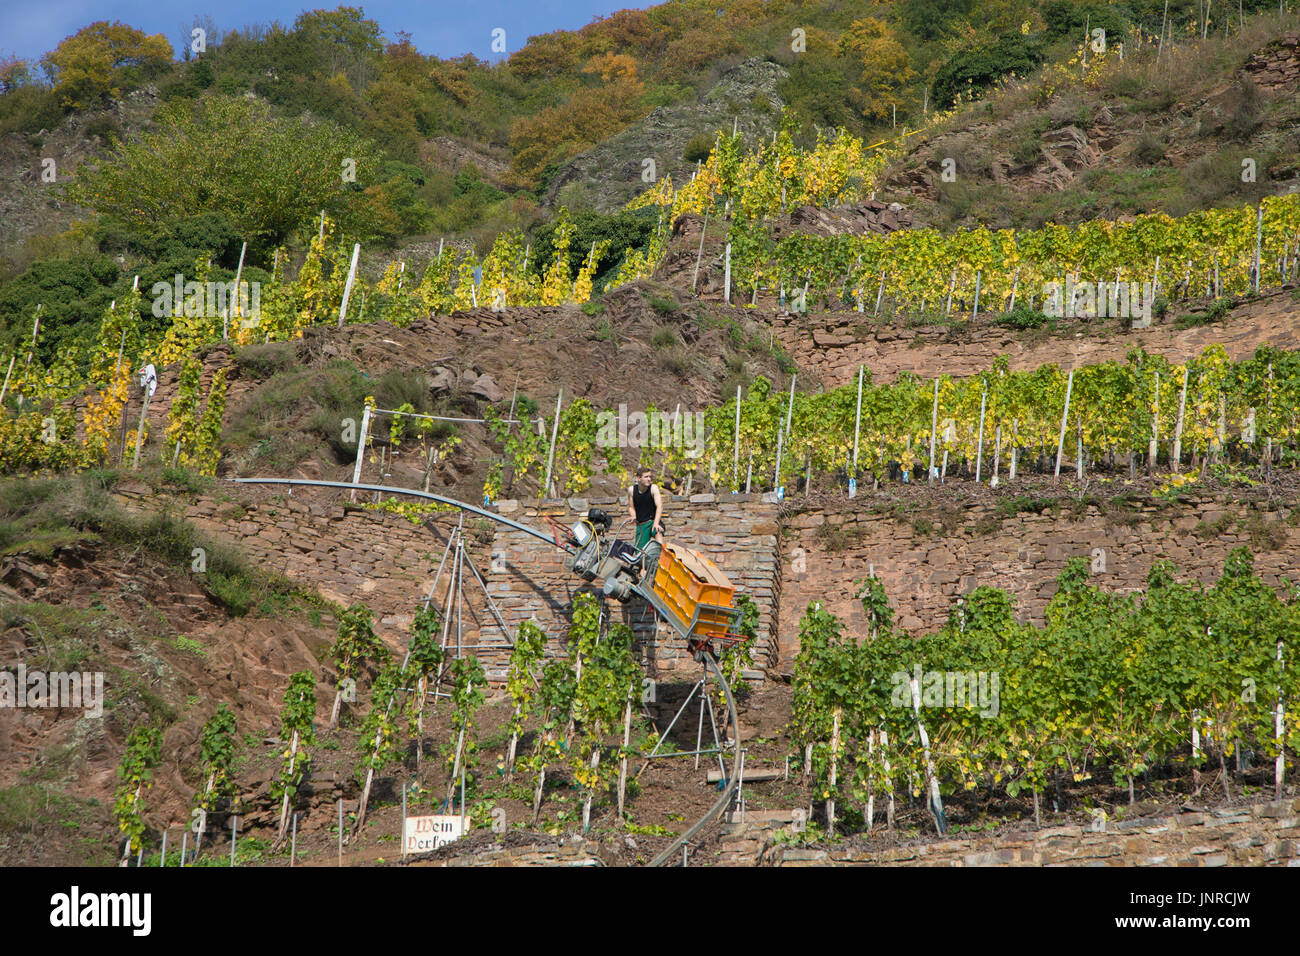 Vendanges avec monorack fer au vignoble escarpé Calmont, Bremm, Moselle, Rhénanie-Palatinat, Allemagne, Europe Banque D'Images